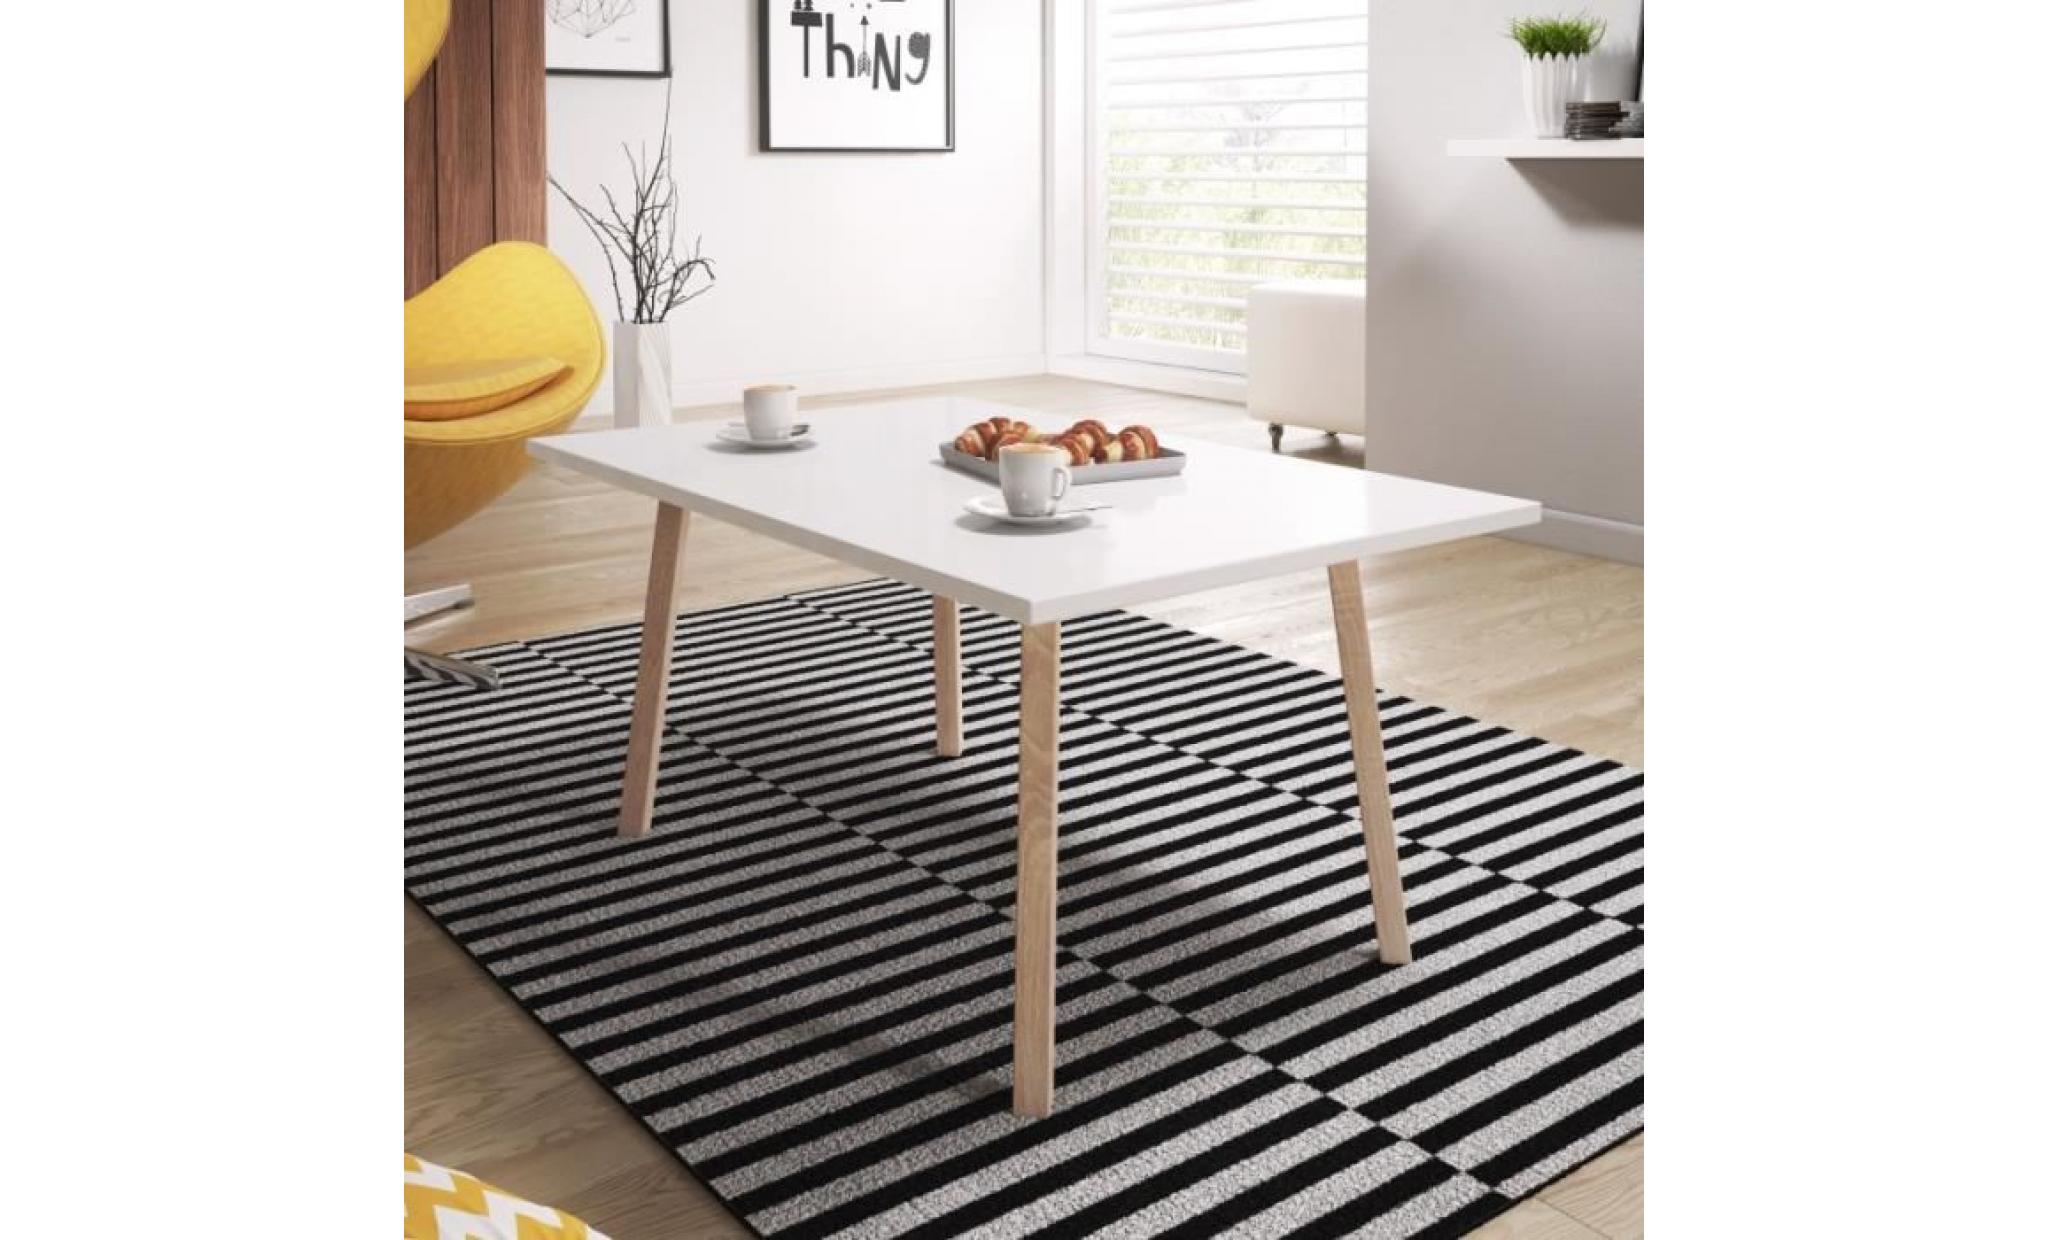 table basse / table scandinave   passa   80 cm   blanc mat   pieds en bois de hêtre   style scandinave   style minimaliste